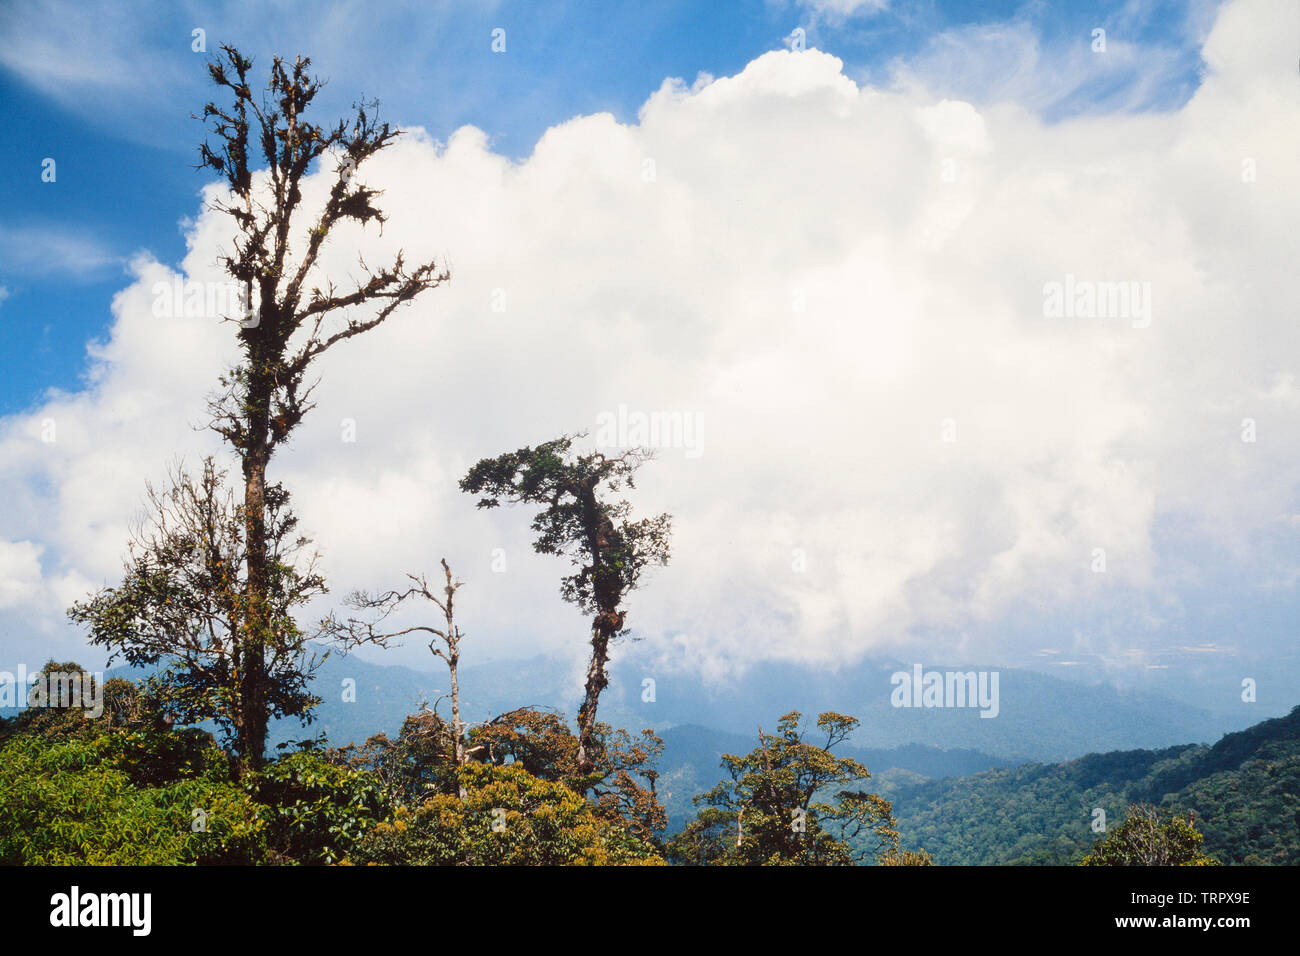 El Parque Nacional del Monte Kinabalu, Sabah, Malasia Oriental. Sendero de la Cumbre, ver a 3200 metros, mostrando matorral como hábitat. Foto de stock